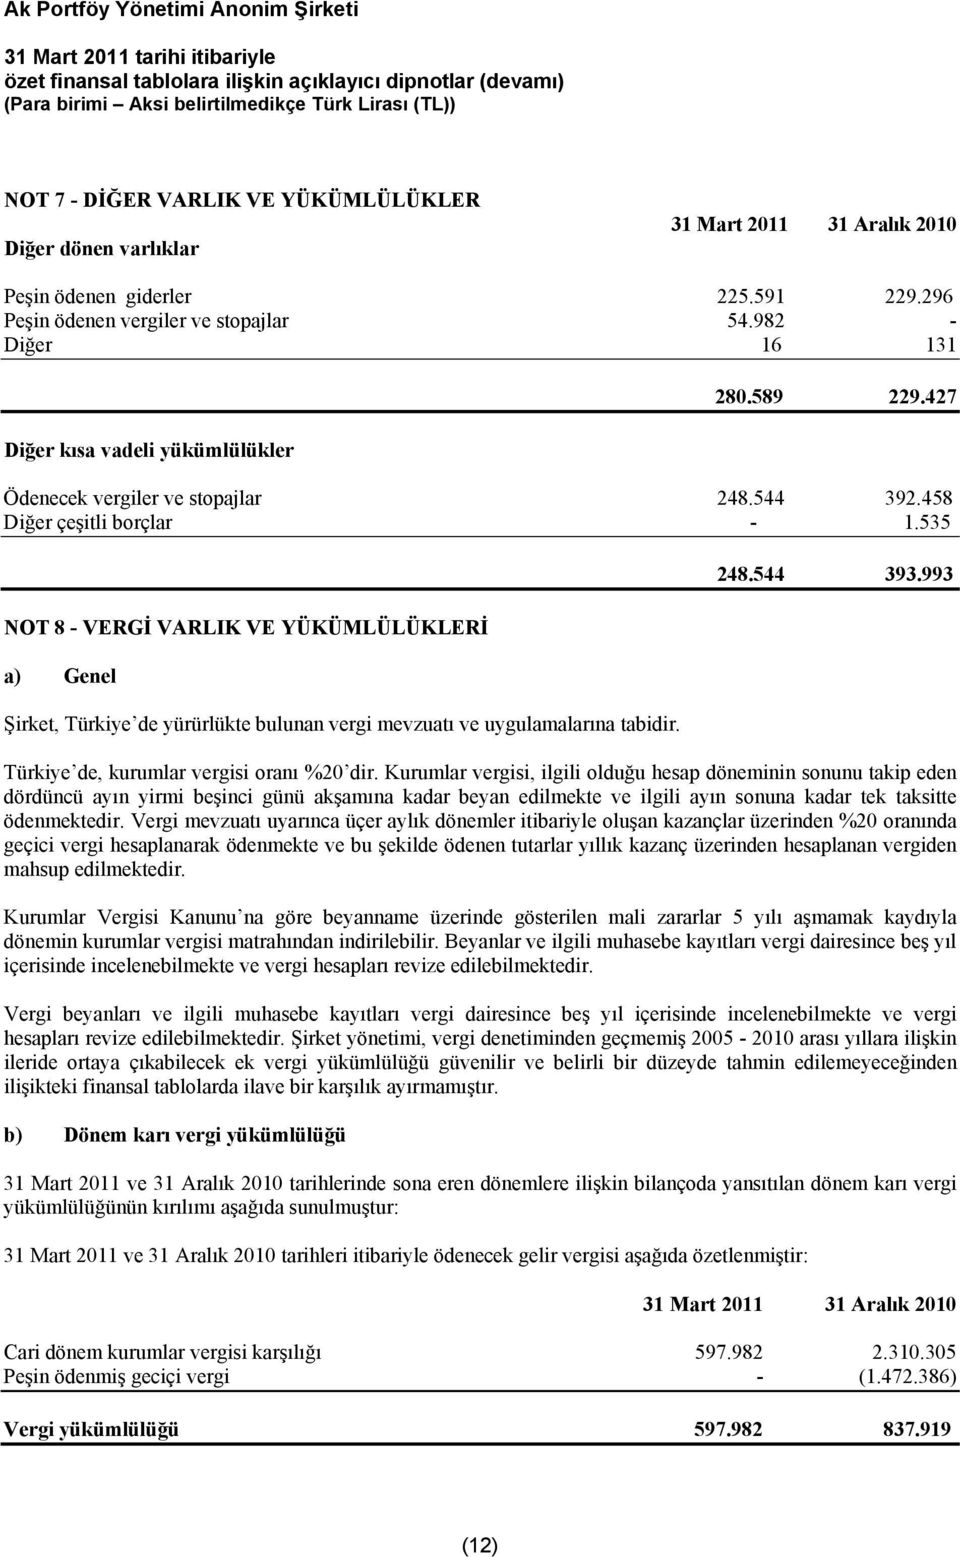 535 NOT 8 - VERGİ VARLIK VE YÜKÜMLÜLÜKLERİ a) Genel Şirket, Türkiye de yürürlükte bulunan vergi mevzuatı ve uygulamalarına tabidir. 248.544 393.993 Türkiye de, kurumlar vergisi oranı %20 dir.